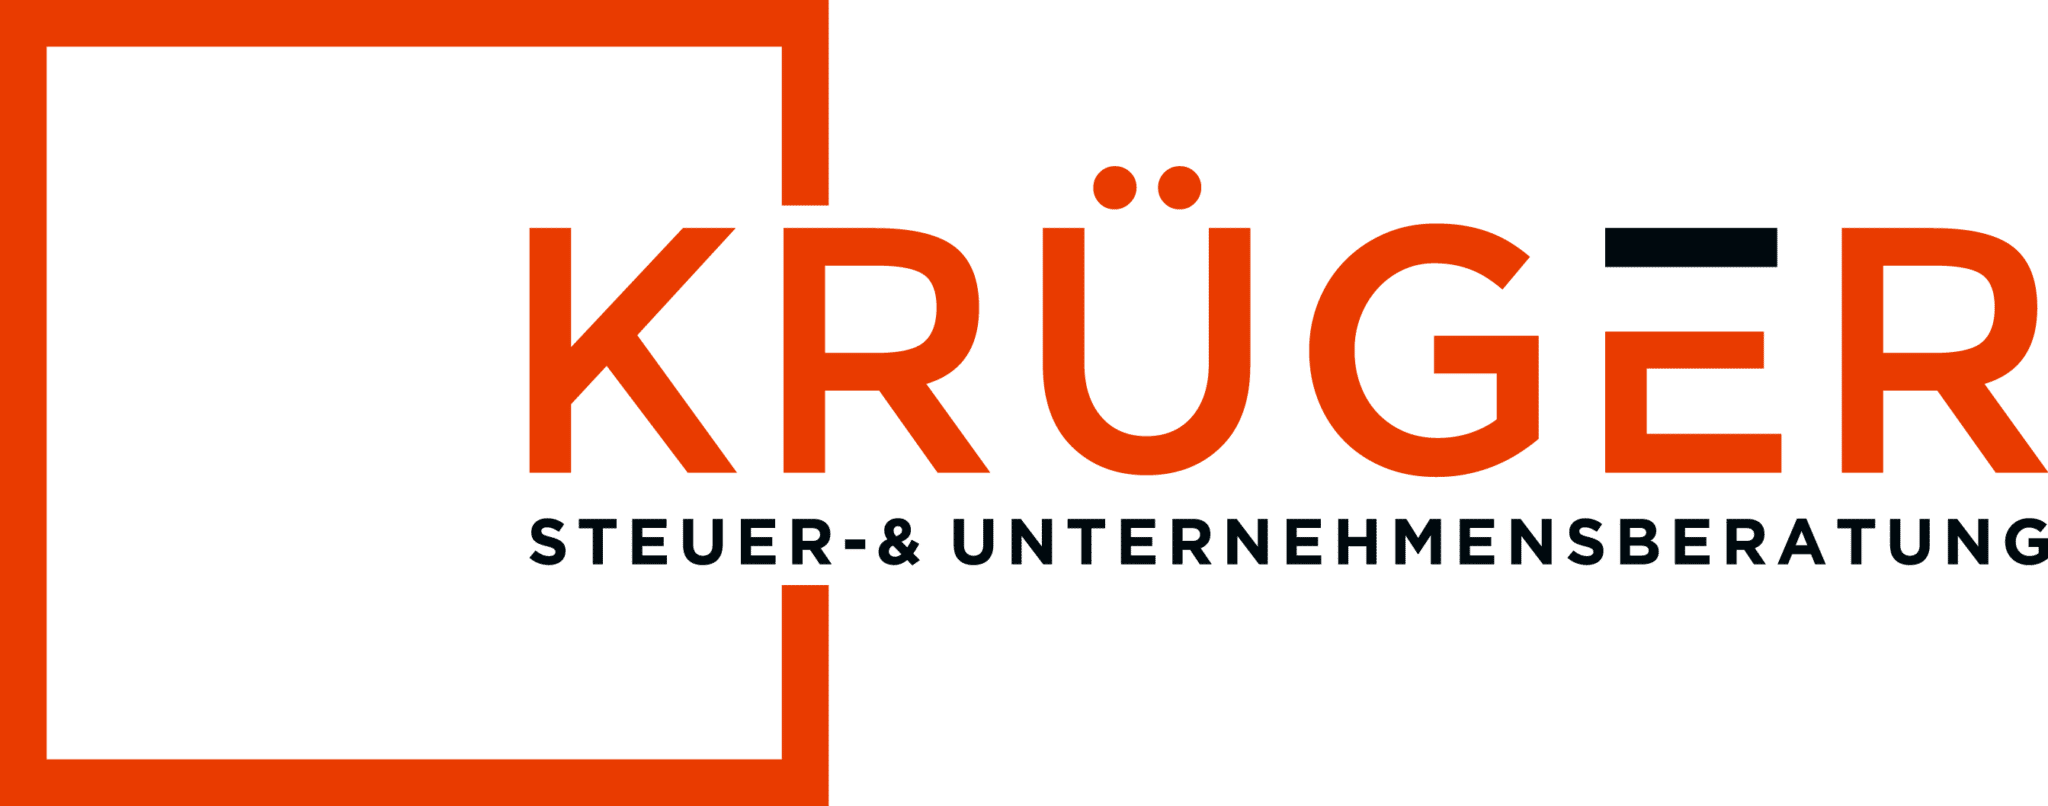 Steuerberatung Krüger - Viersen logo